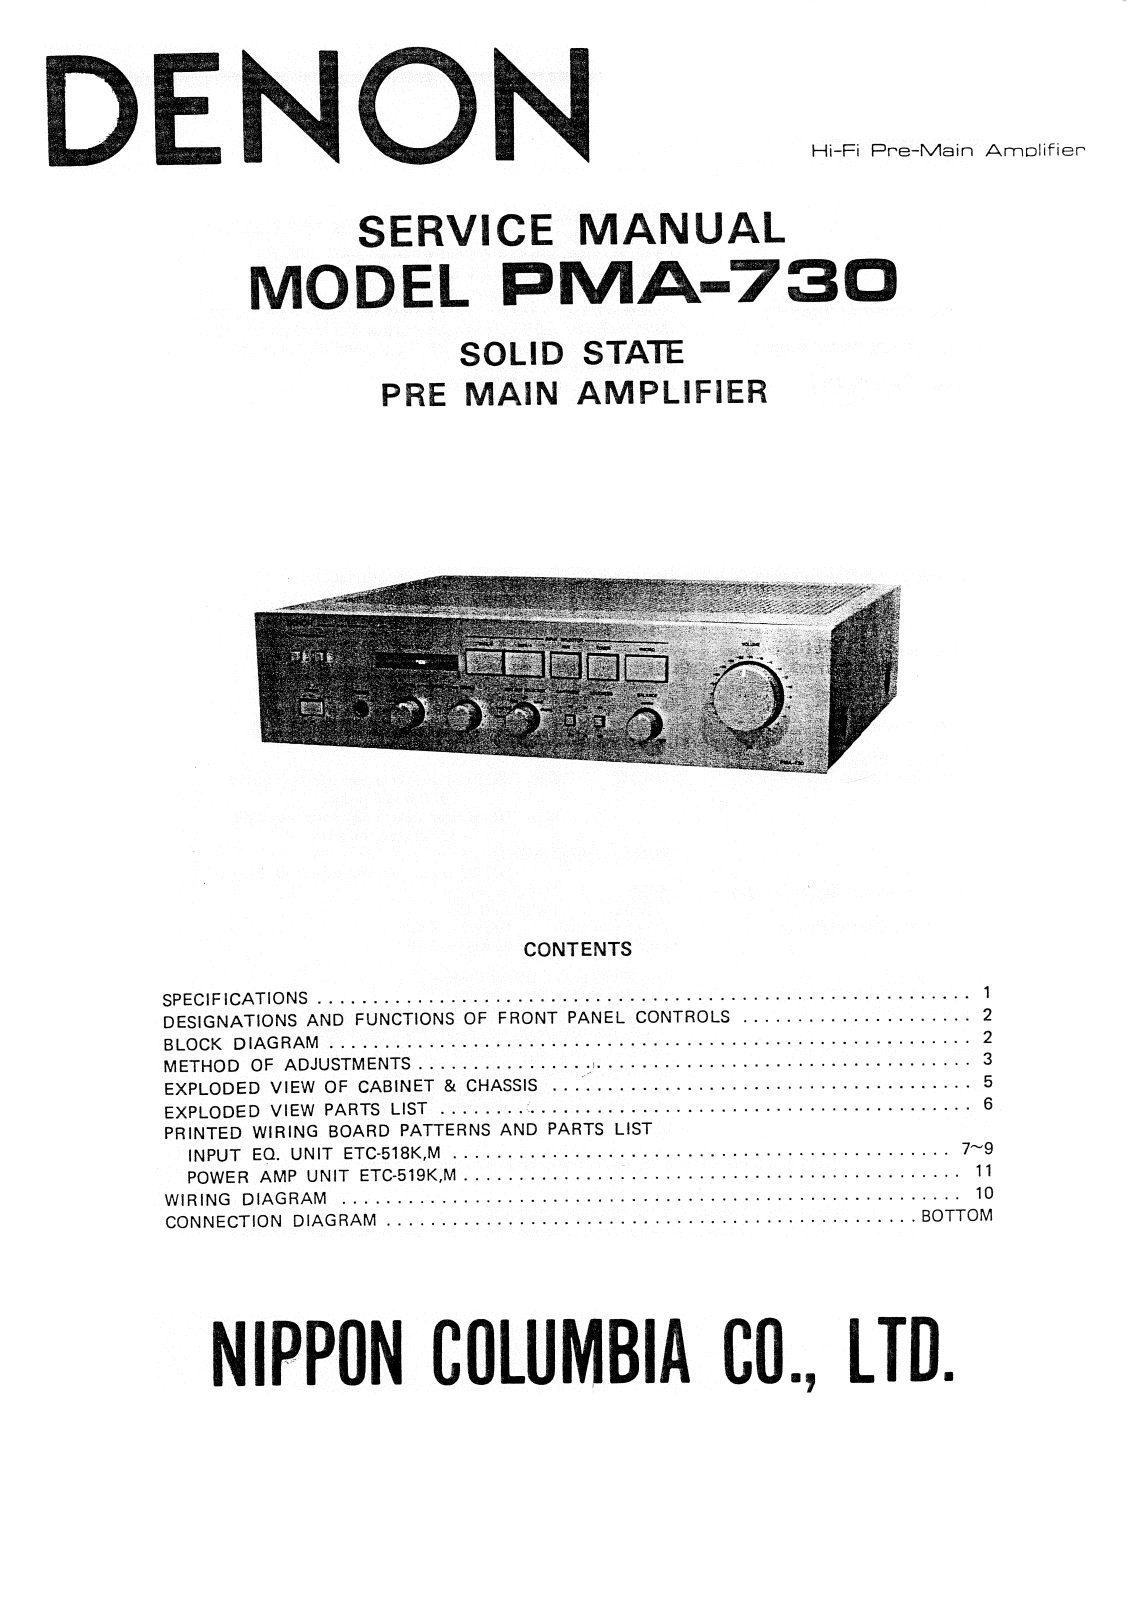 Denon PMA-730 Service Manual